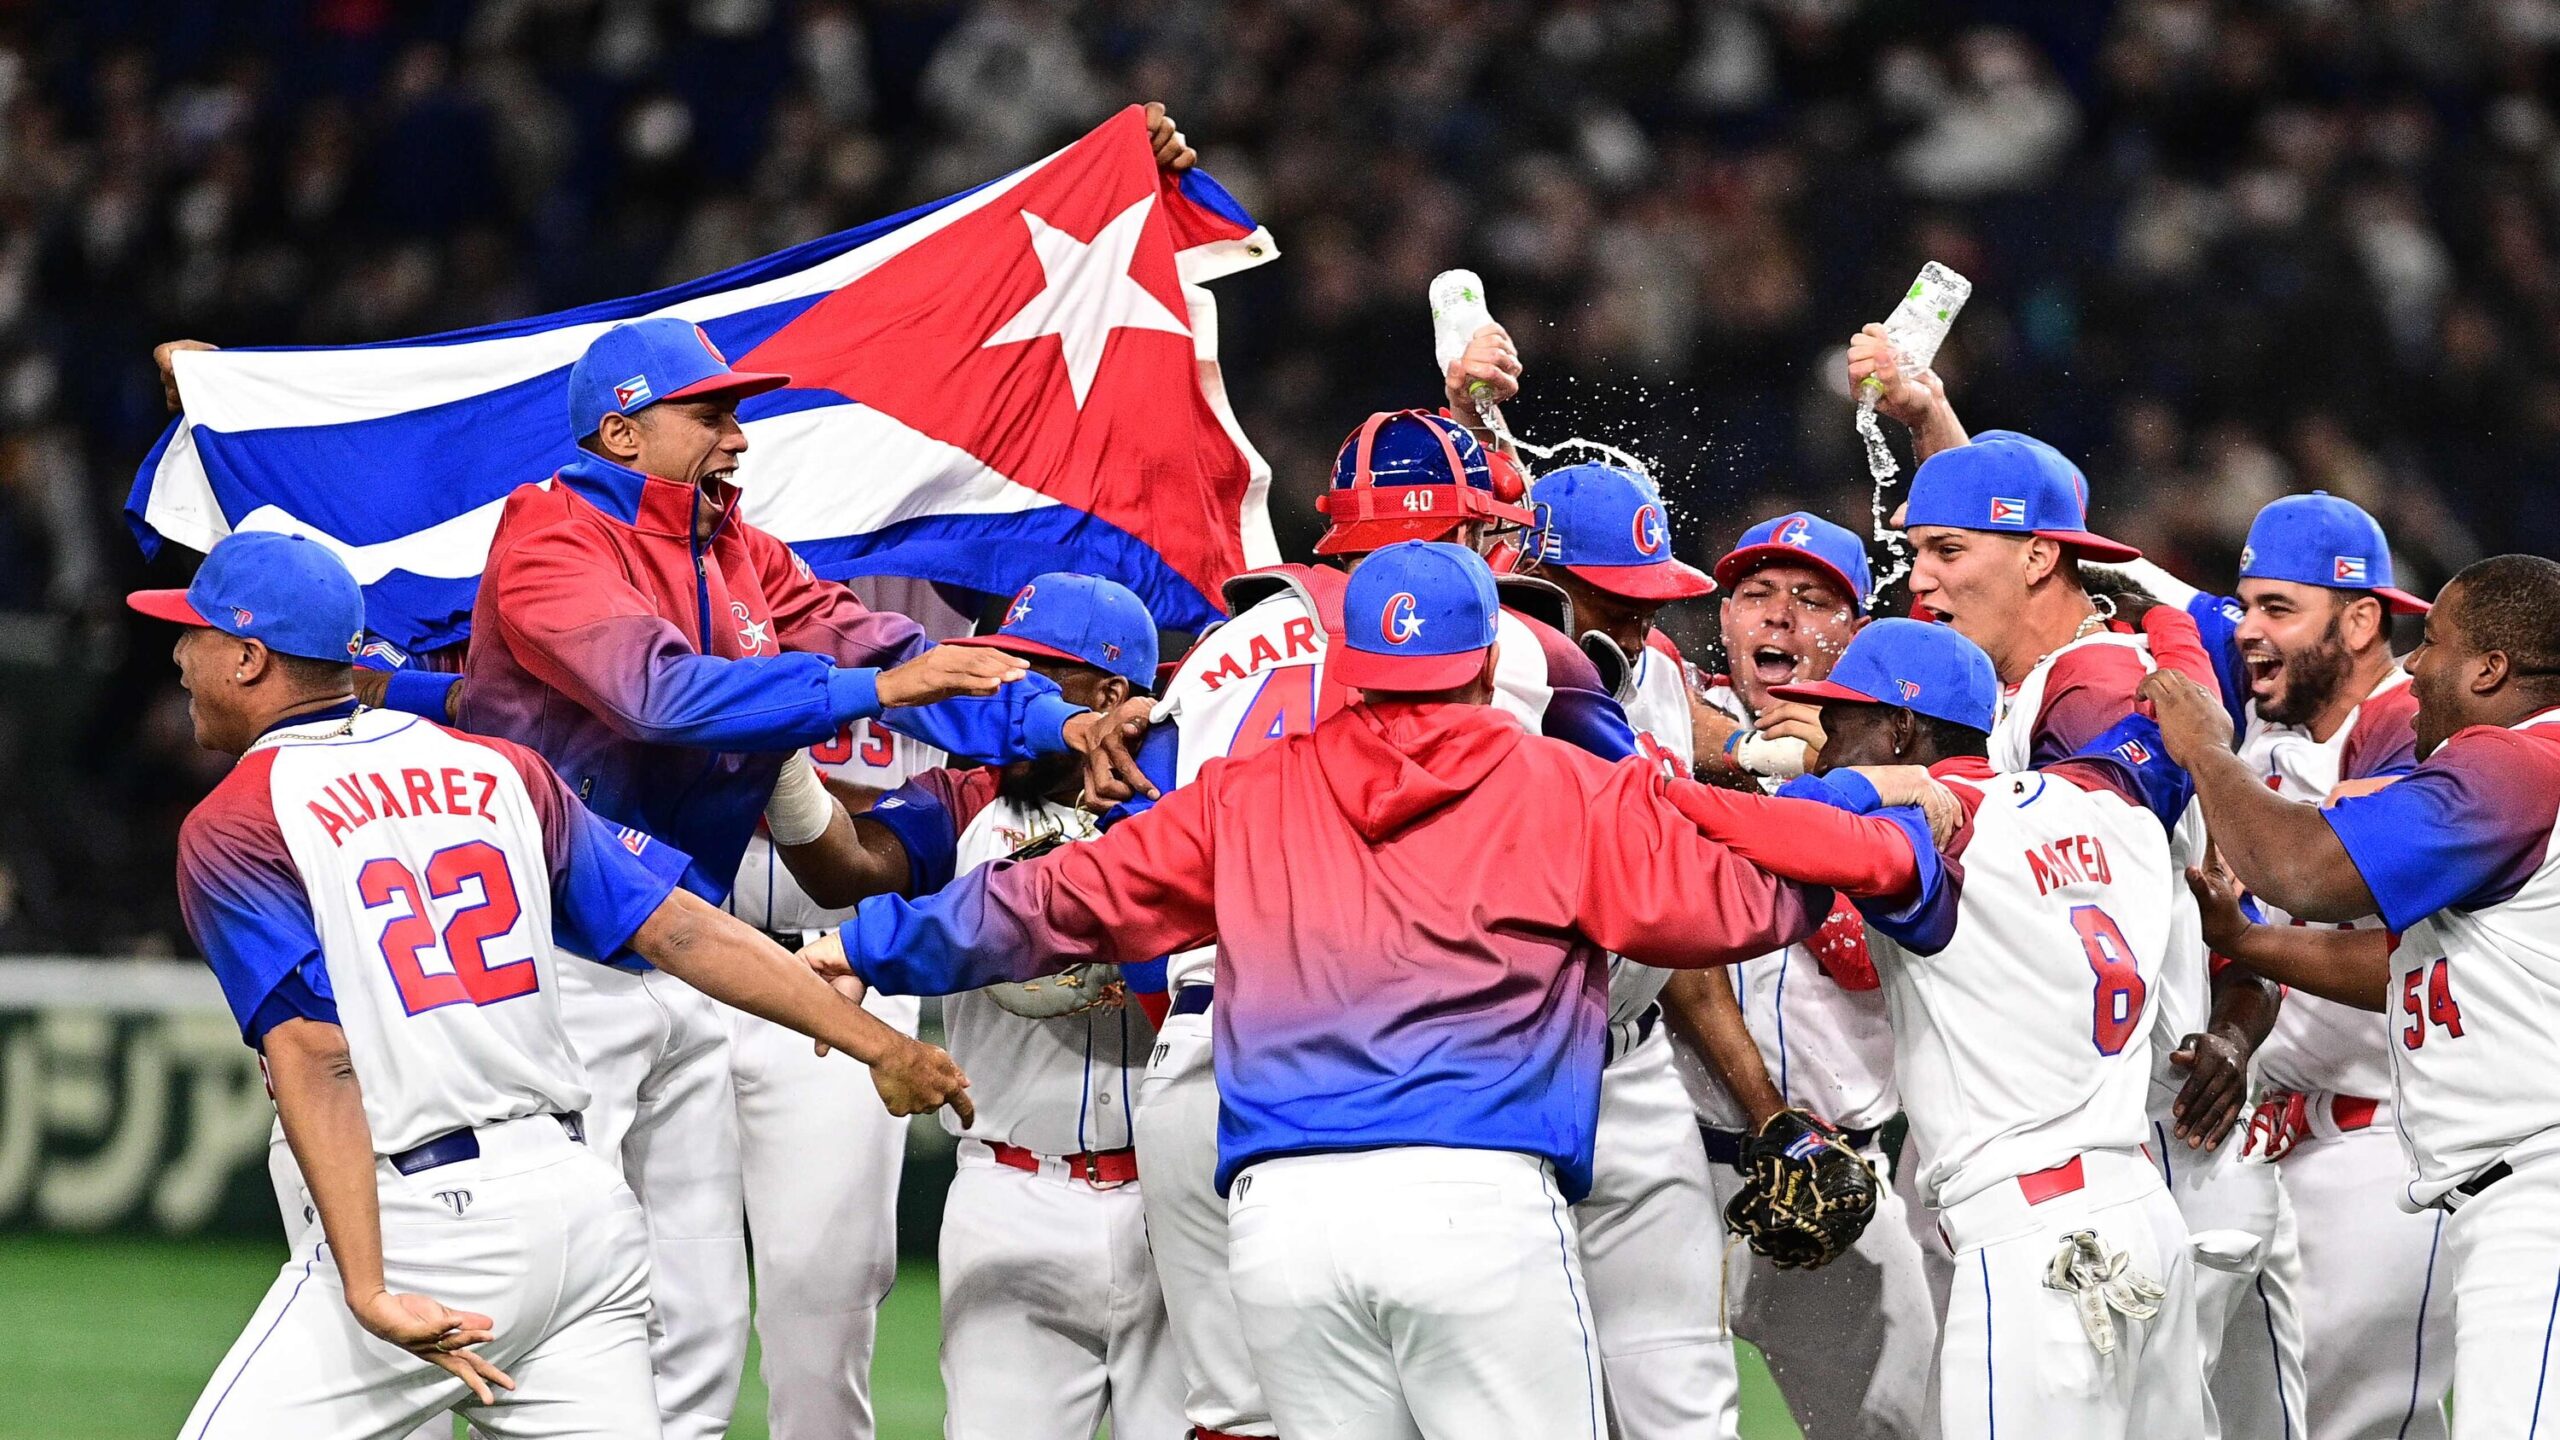 La hora del juego Cuba vs. Estados Unidos y por donde verlo